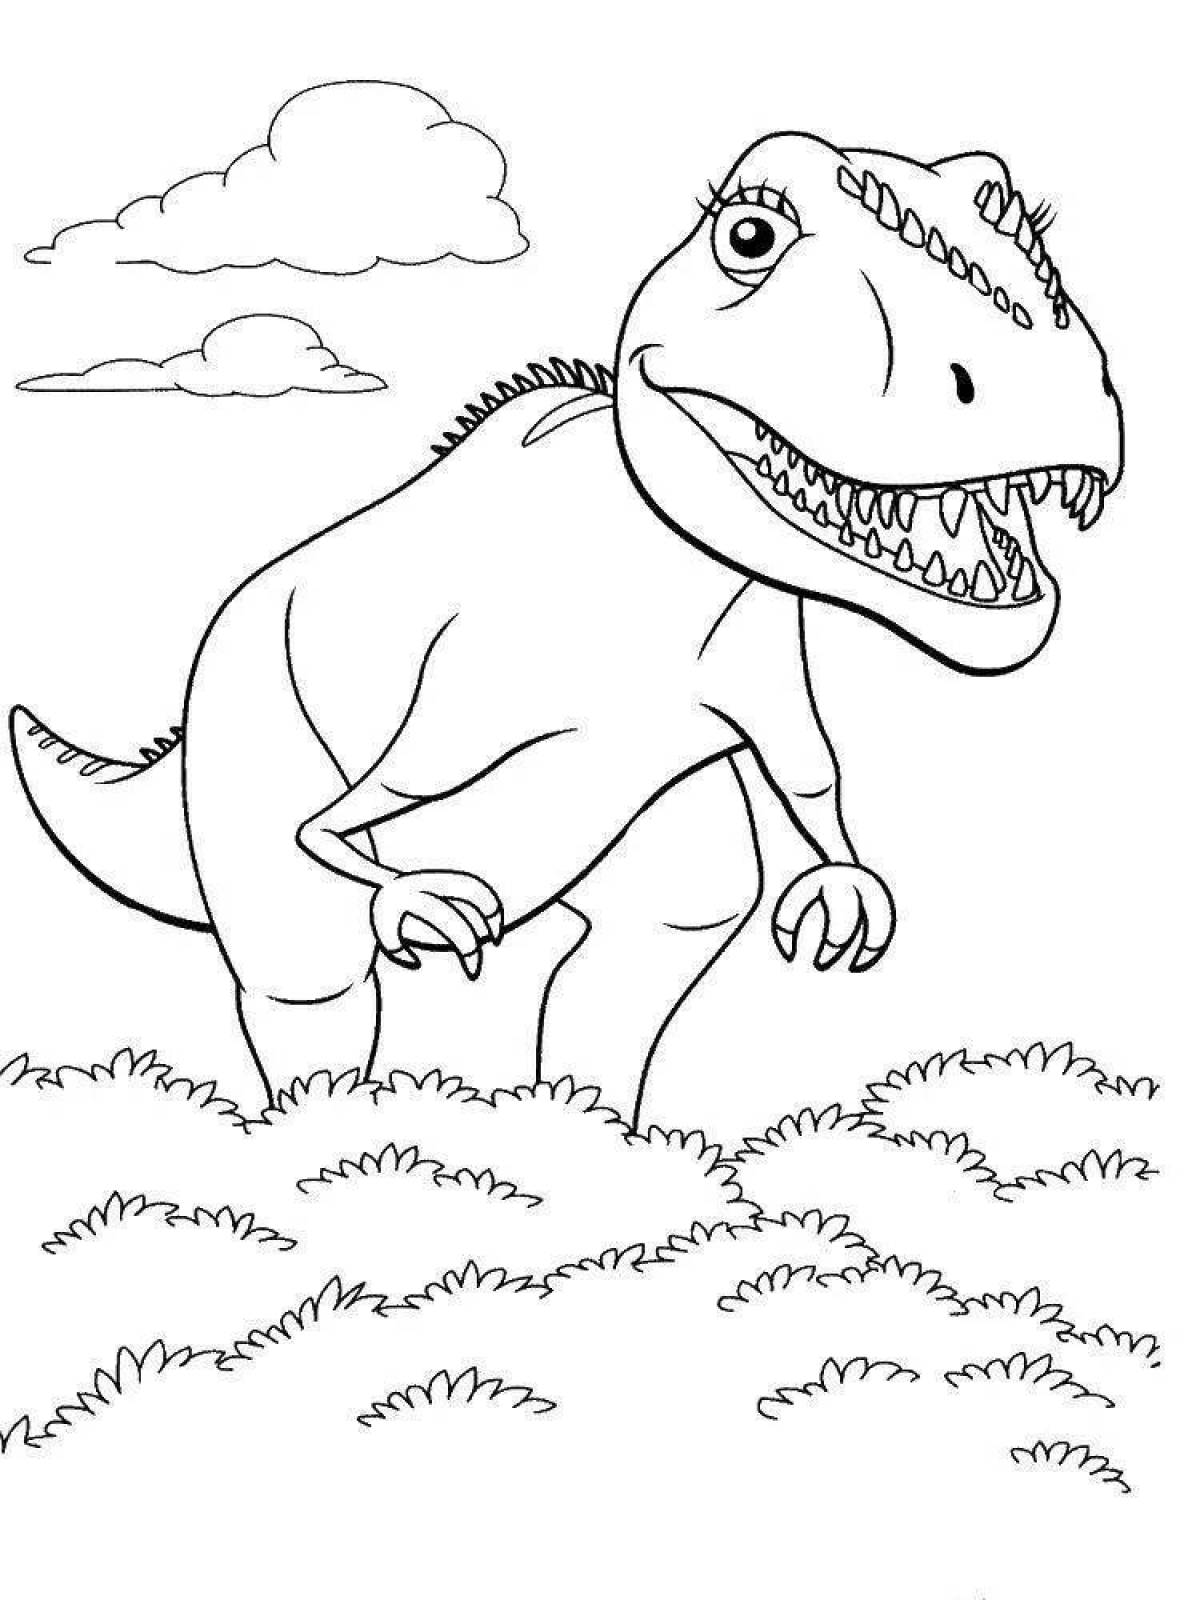 Динозавры раскраска а4. Поезд динозавров Тираннозавр раскраска. Тарбозавр раскраска динозавра. Динозавры / раскраска. Динозавр раскраска для детей.